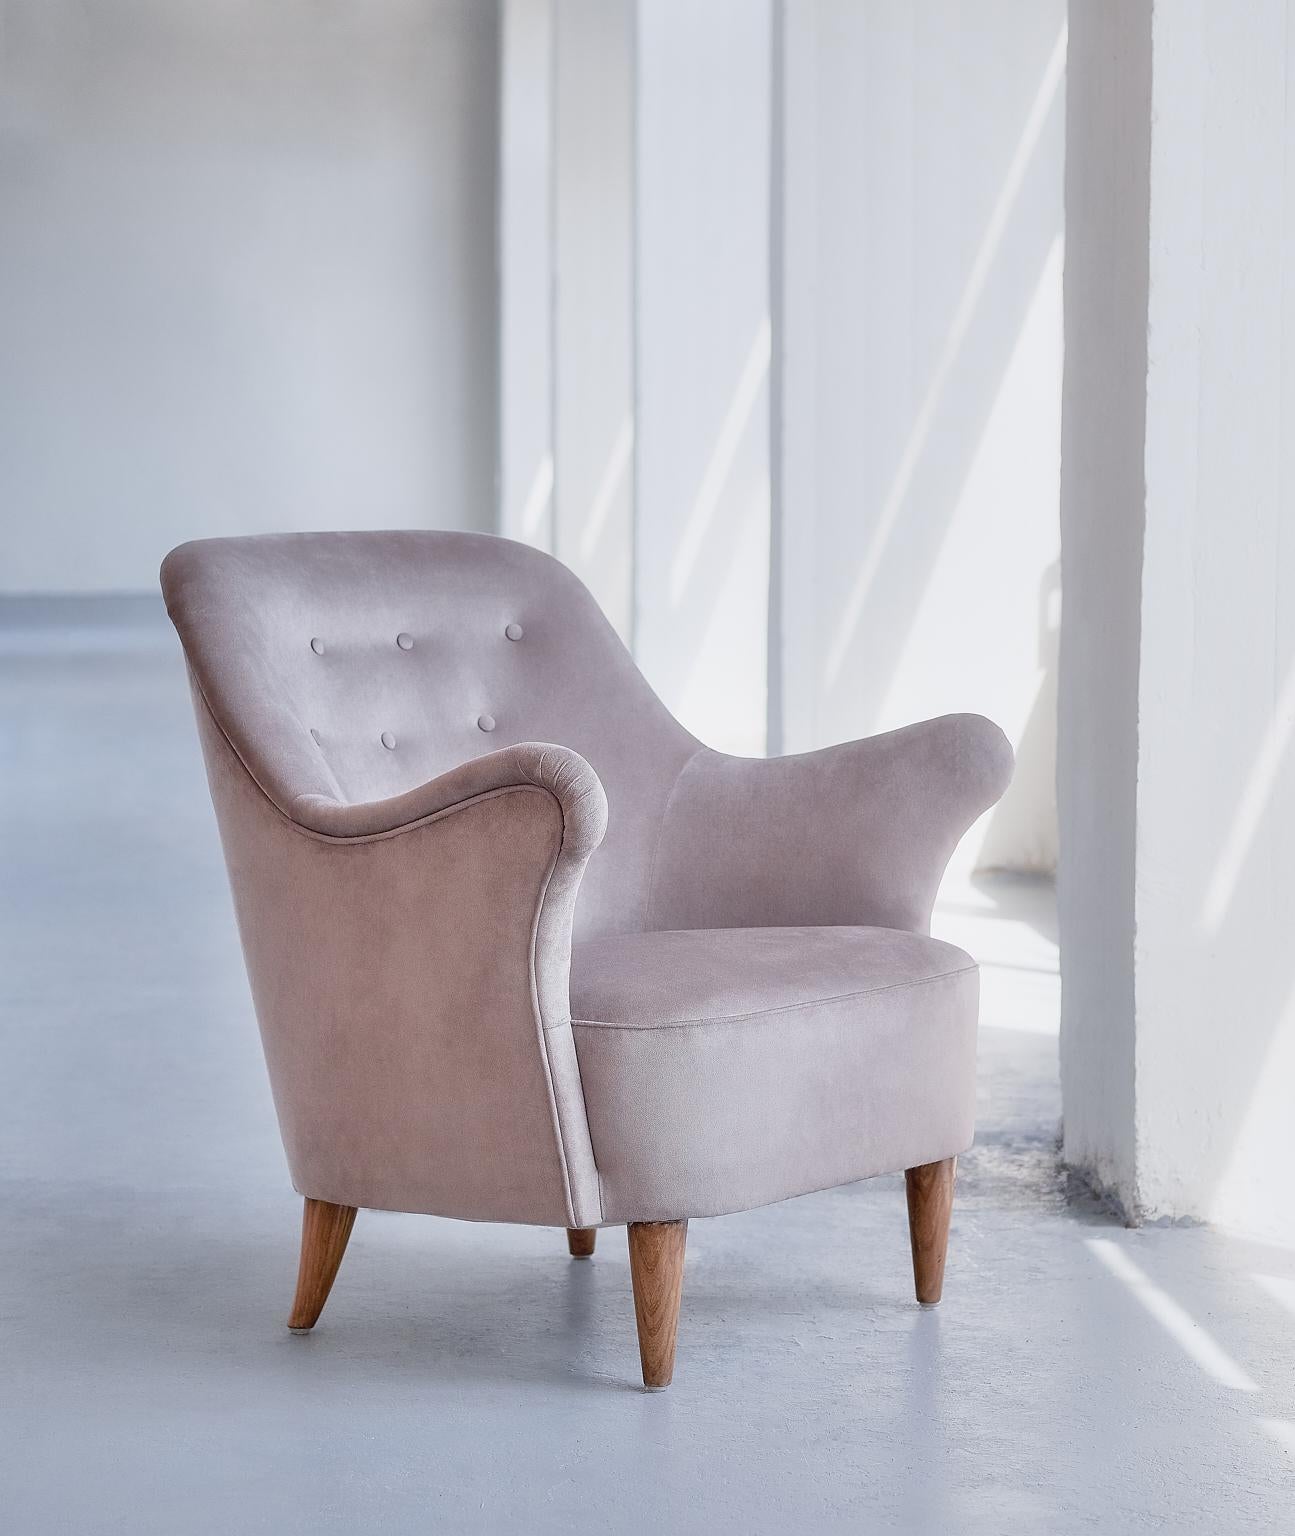 Ce fauteuil rare a été produit par AB Elsa Gullberg à la fin des années 1930. Les accoudoirs de forme organique de la chaise et les pieds sculptés et effilés lui confèrent un aspect sculptural et moderne. La chaise est tapissée d'un tissu de velours